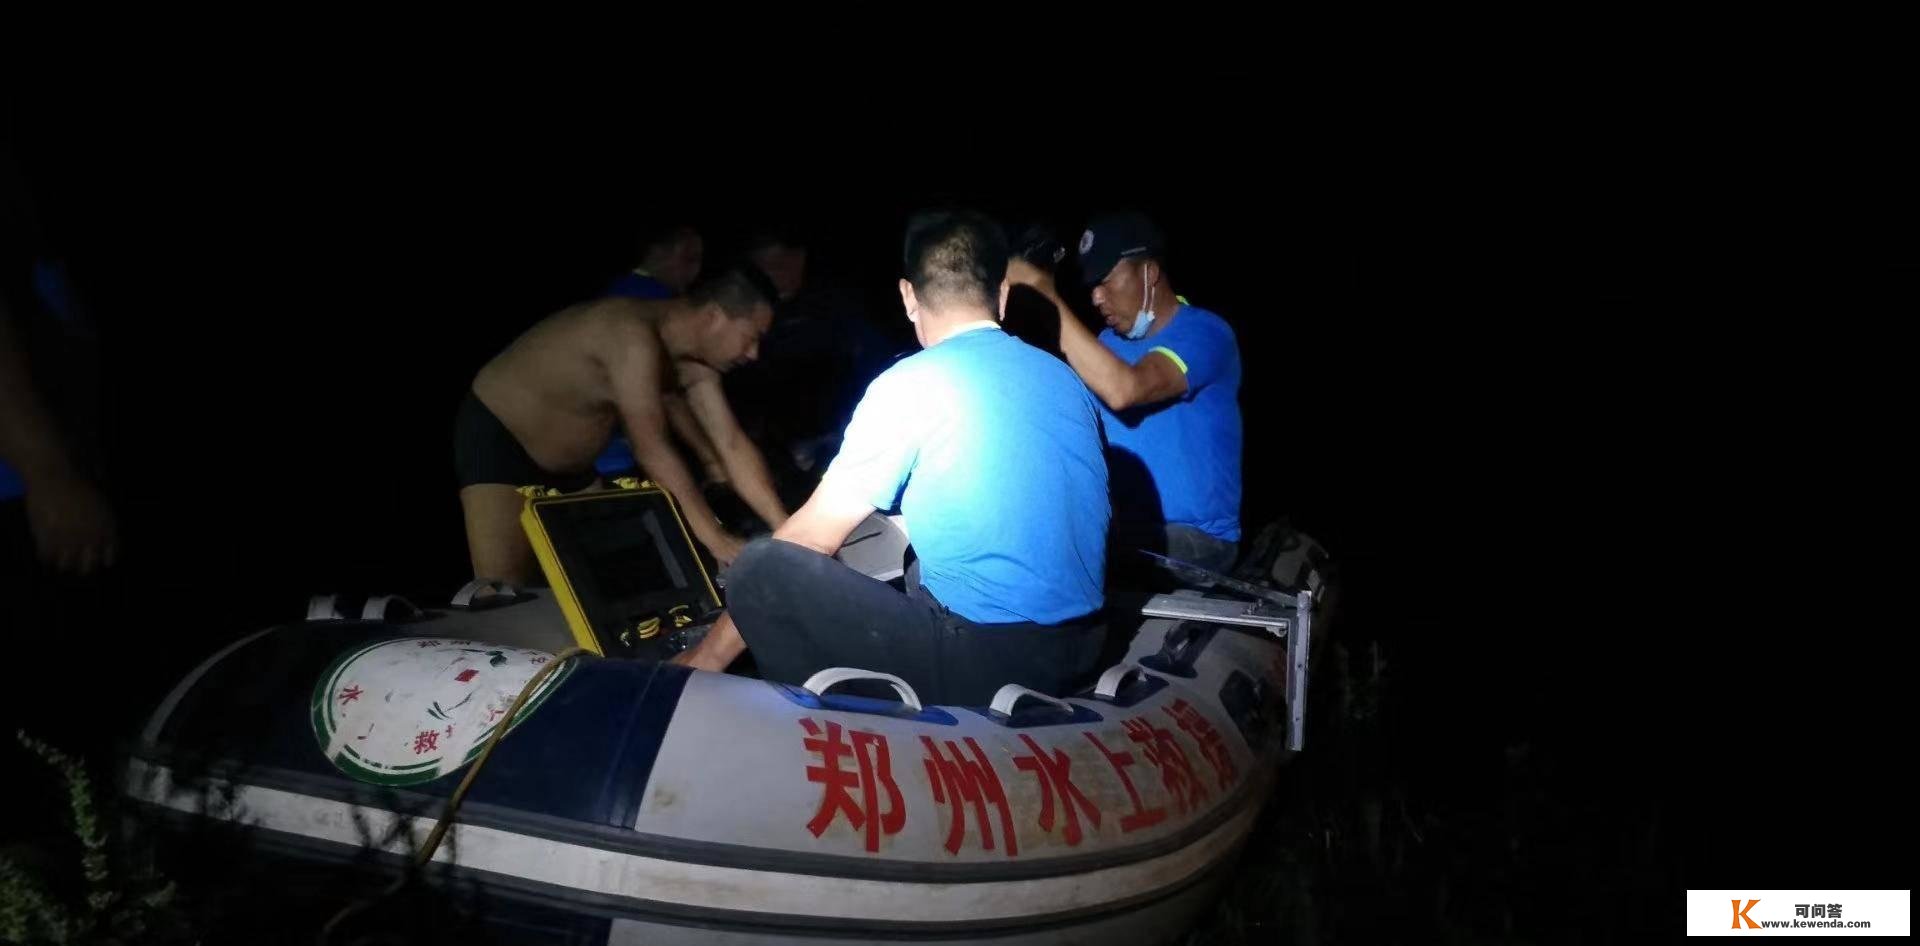 郑州水上救援队：15年义务捞尸477具，空姐被害案后，曾告状滴滴